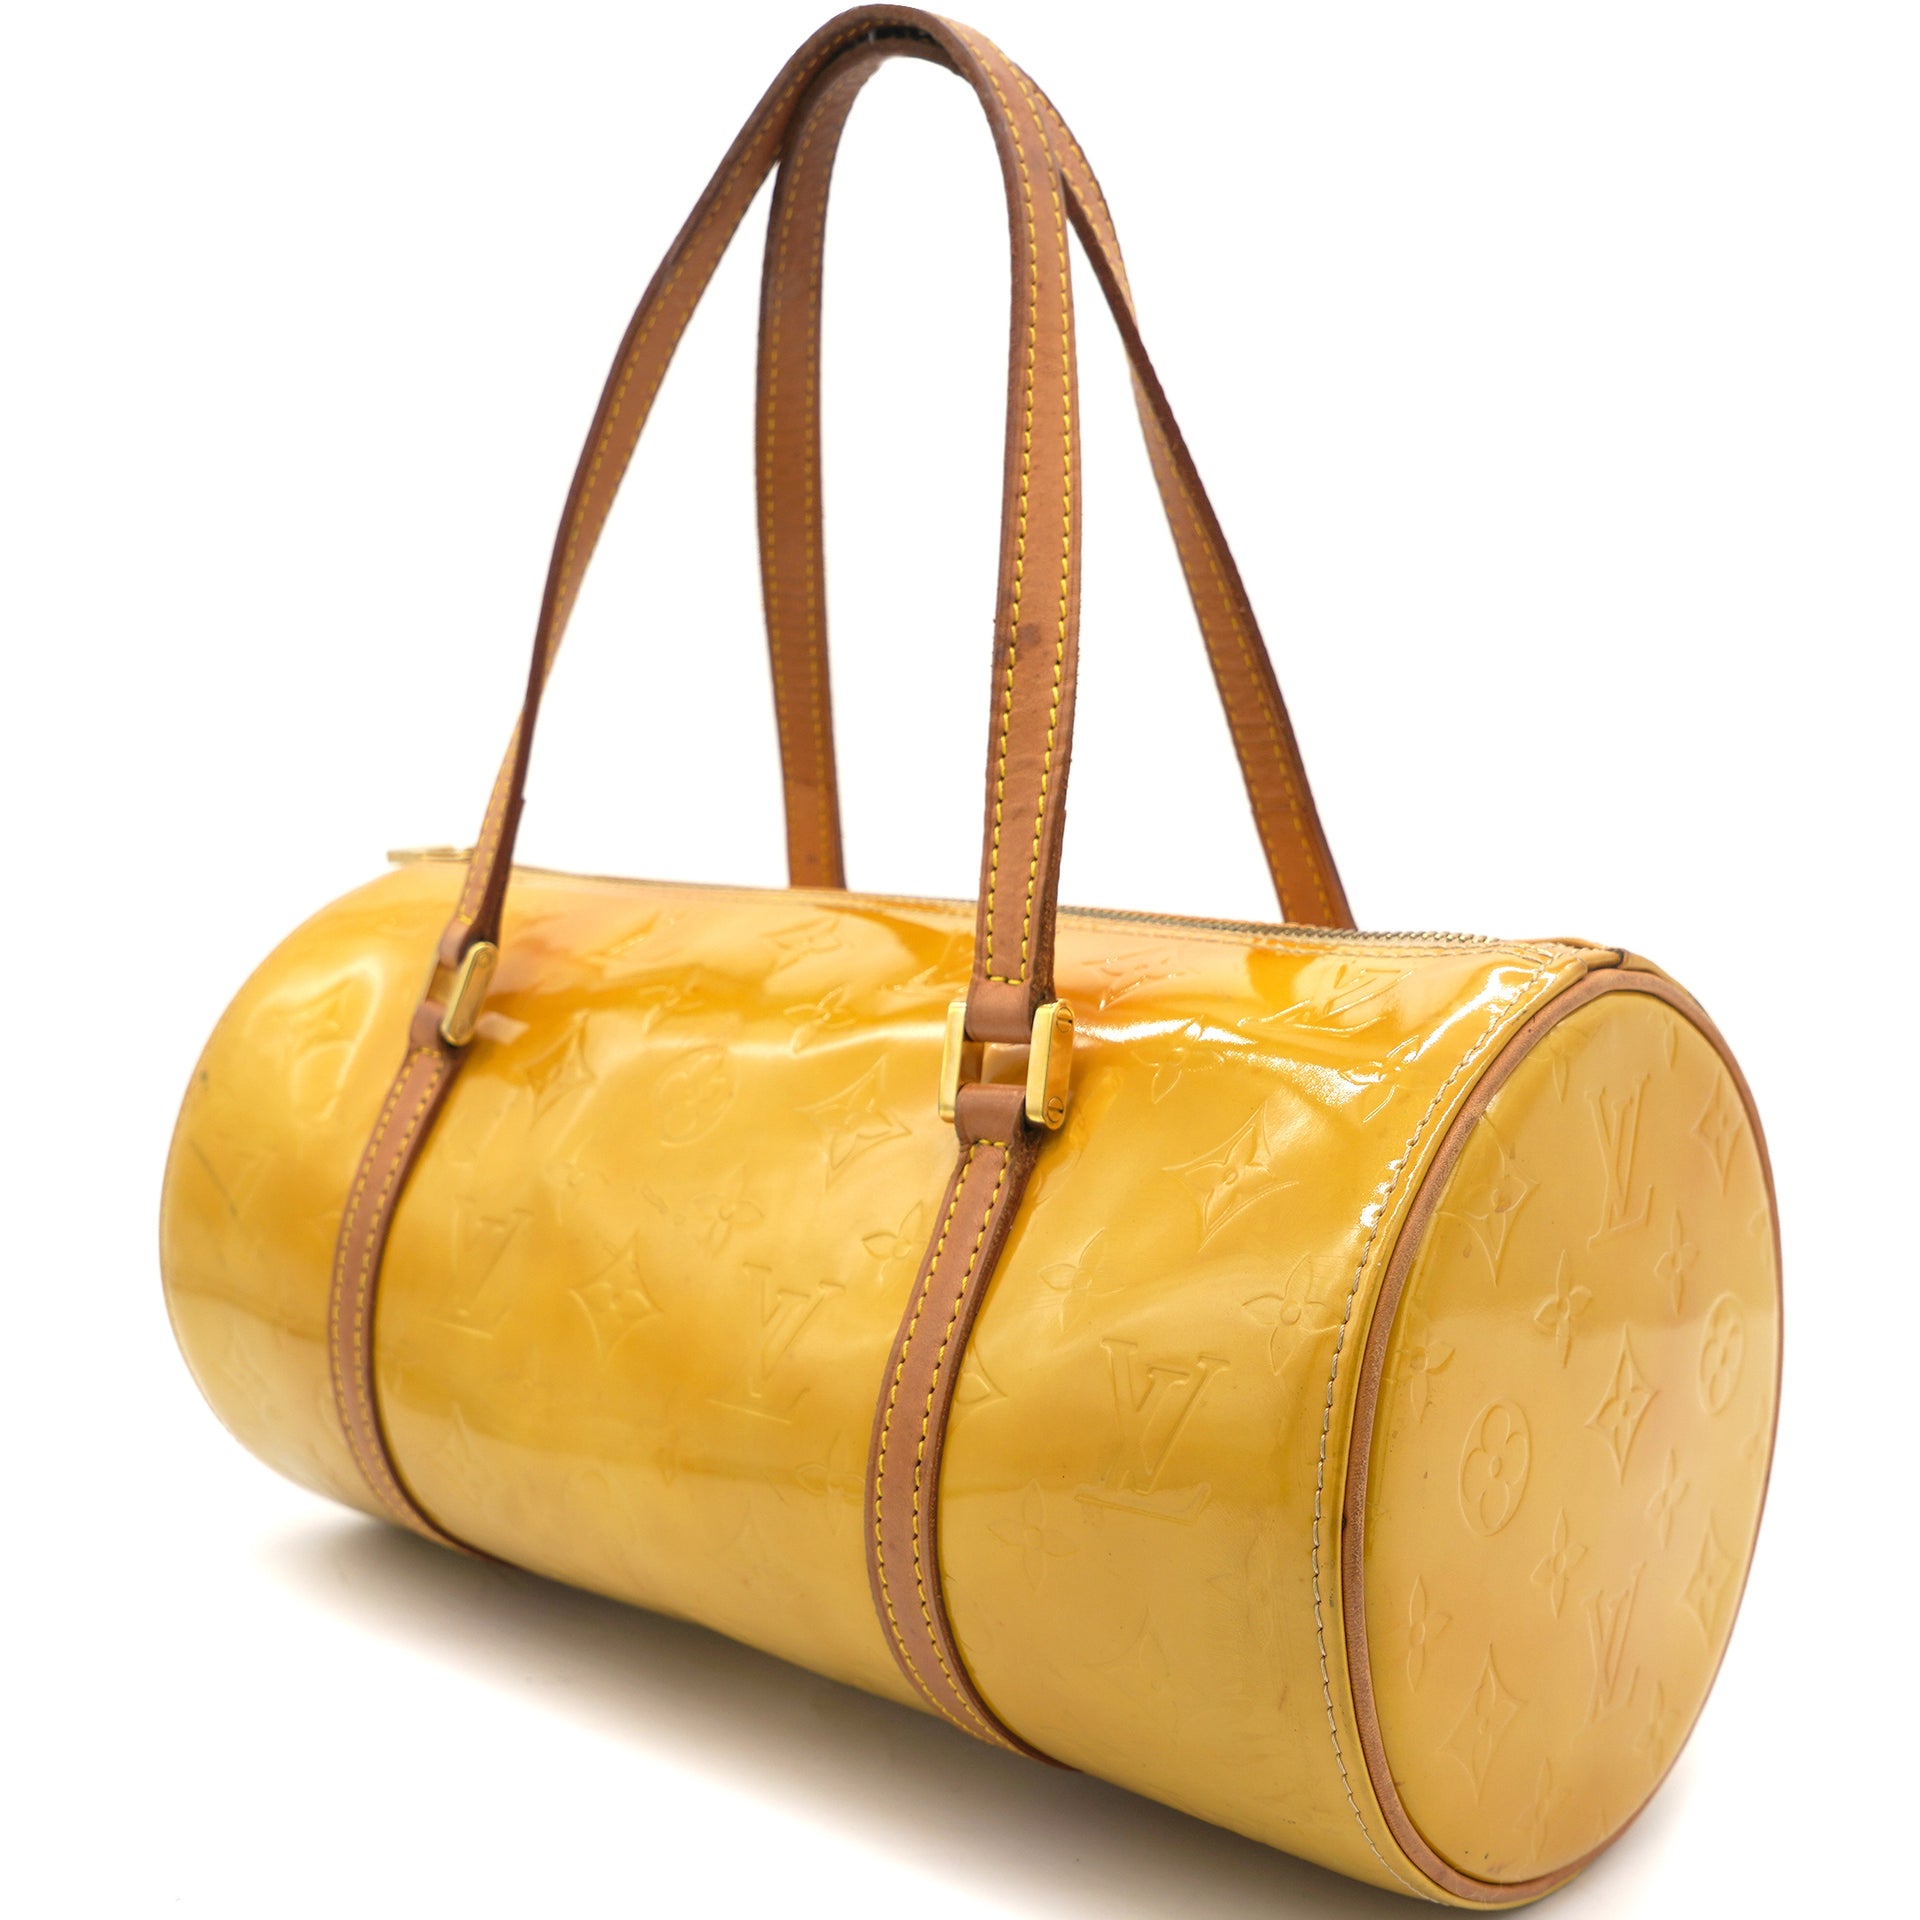 Papillon patent leather handbag Louis Vuitton Beige in Patent